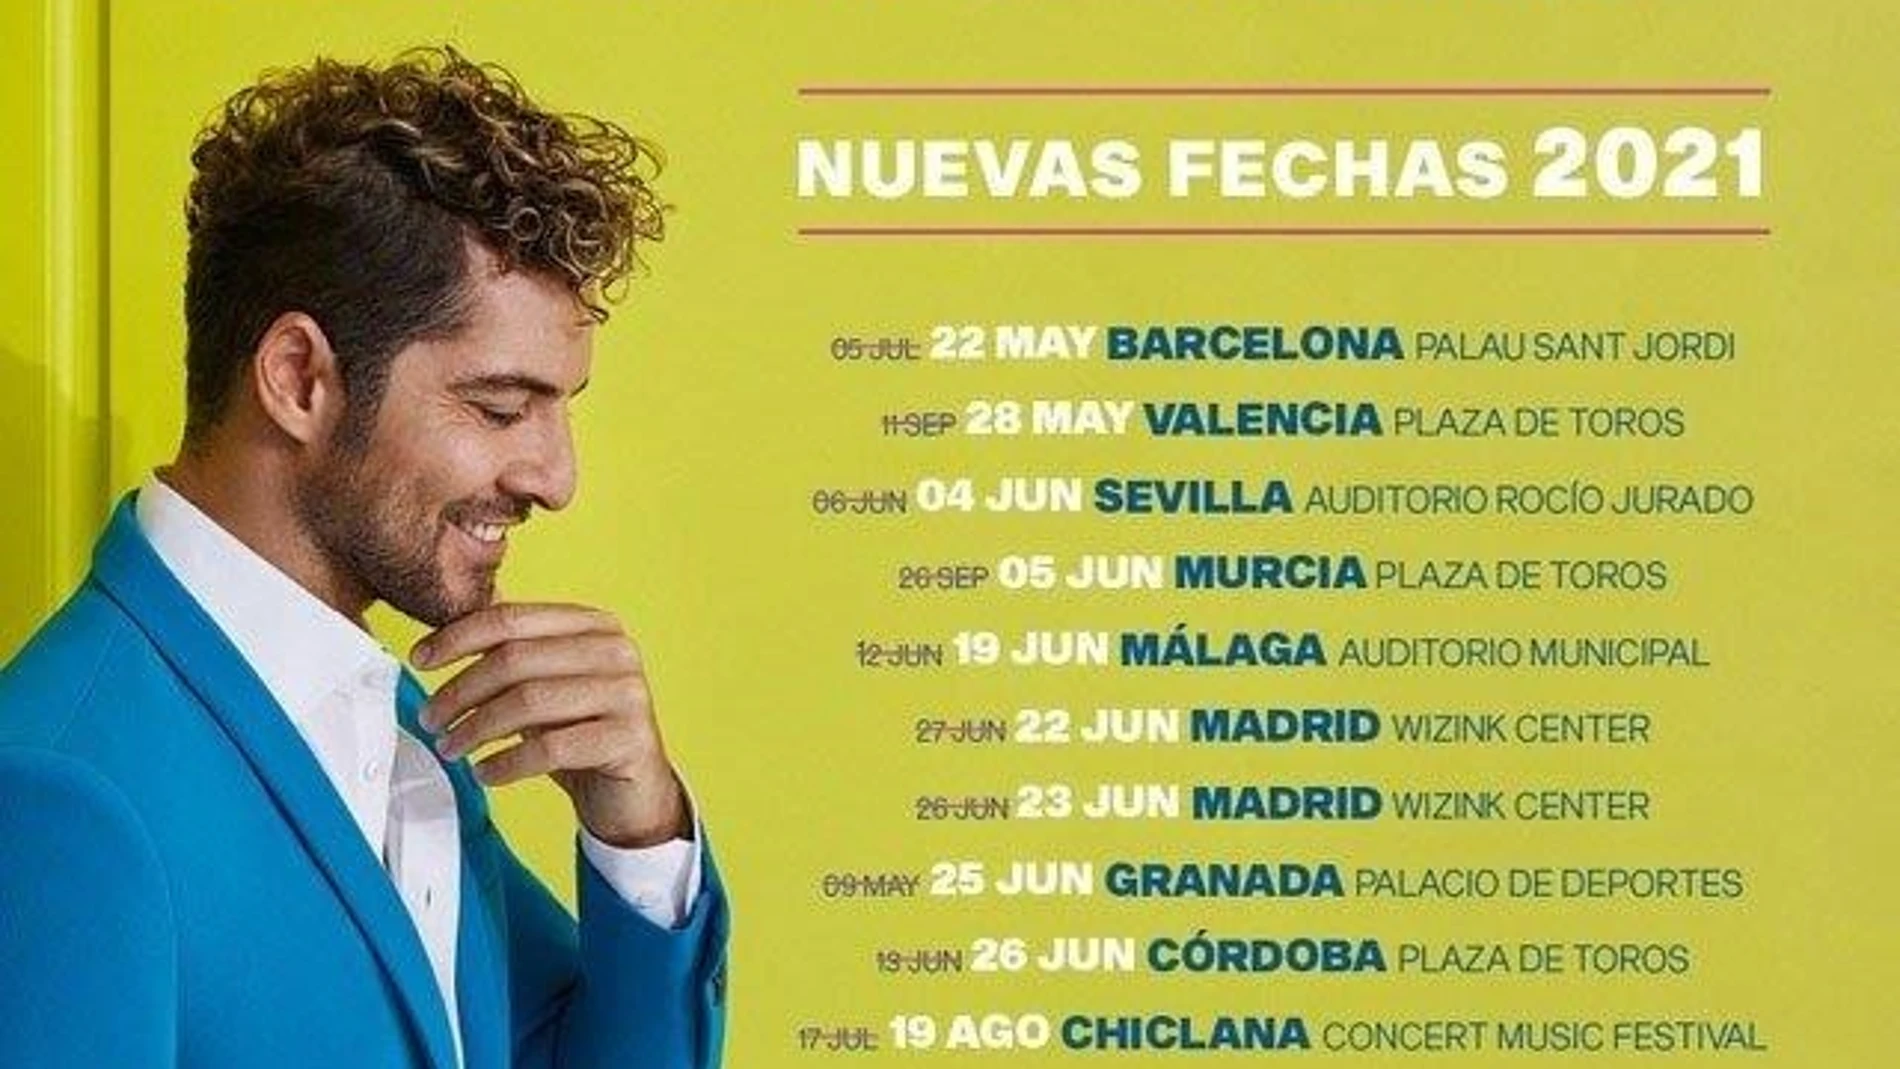 David Bisbal pospone su concierto en Murcia al 5 de junio de 2021